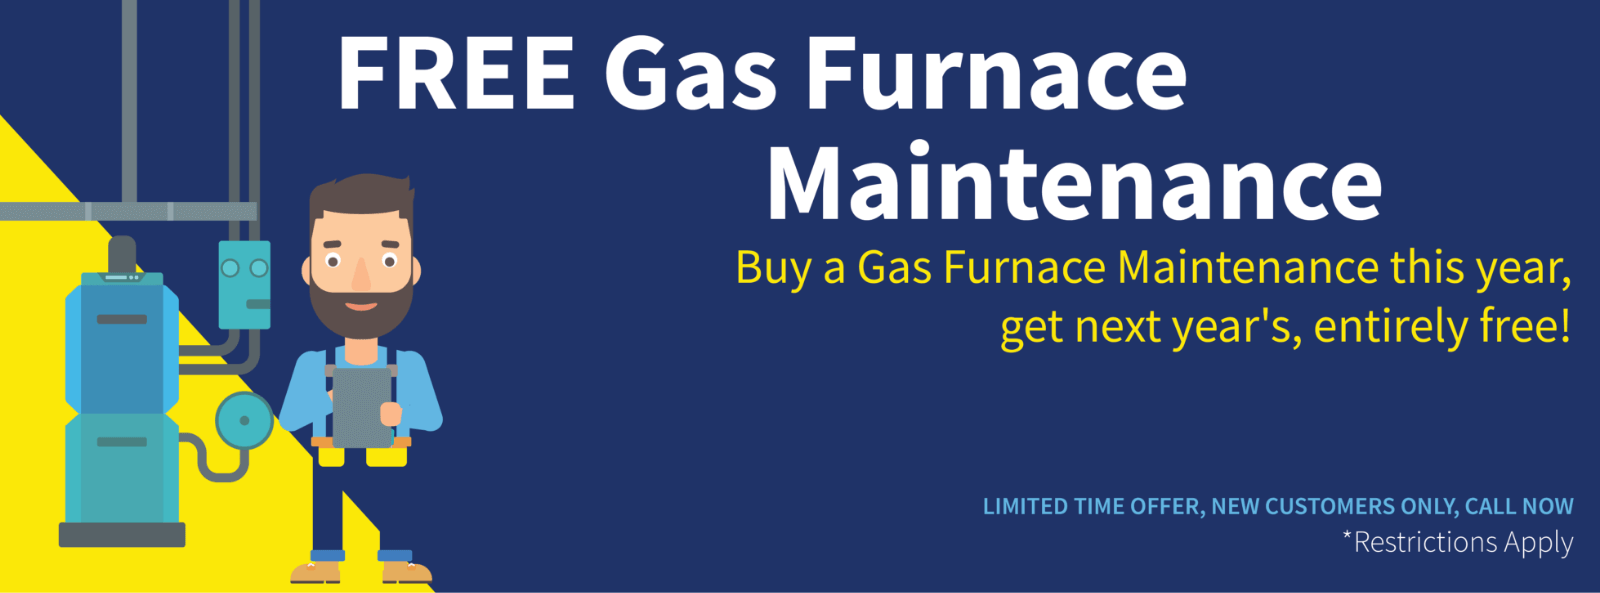 Free gas furnace maintenance